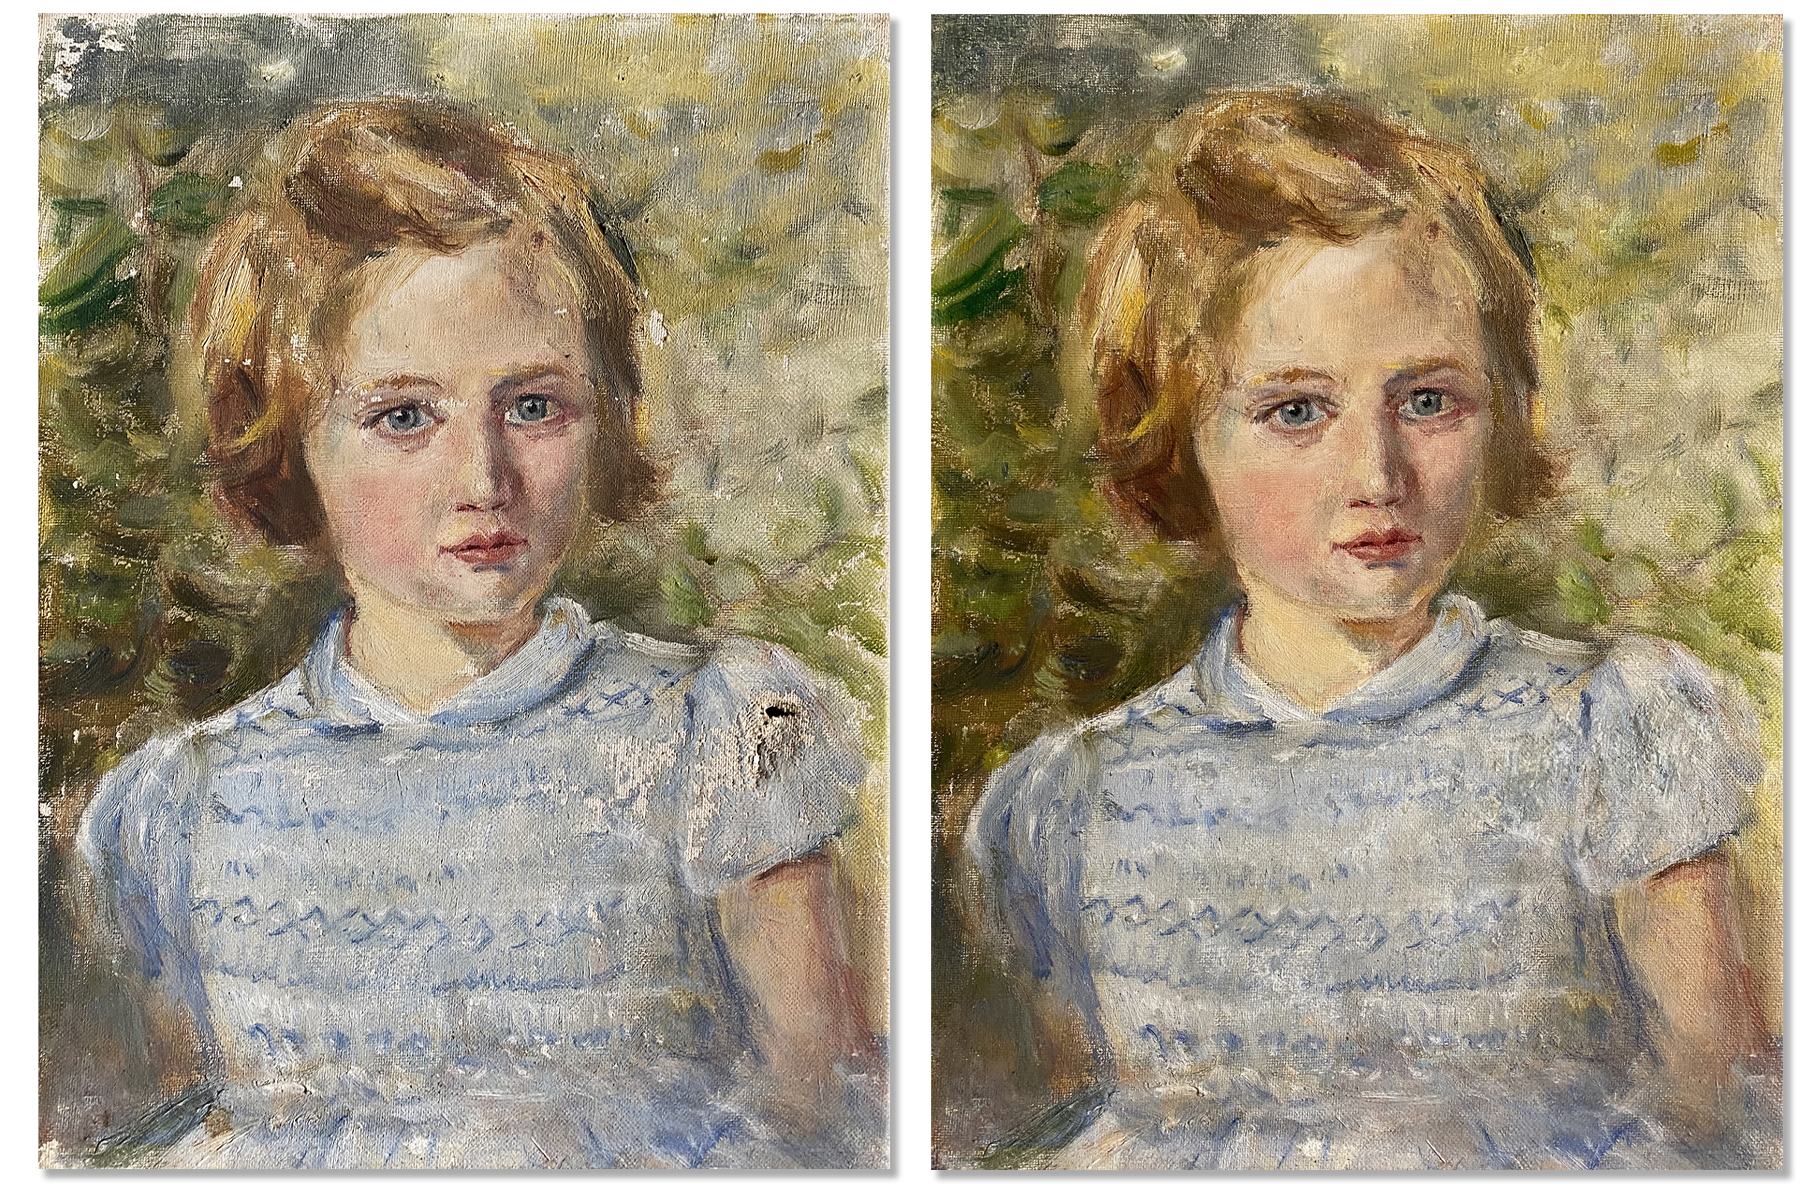 Child portrait restoration